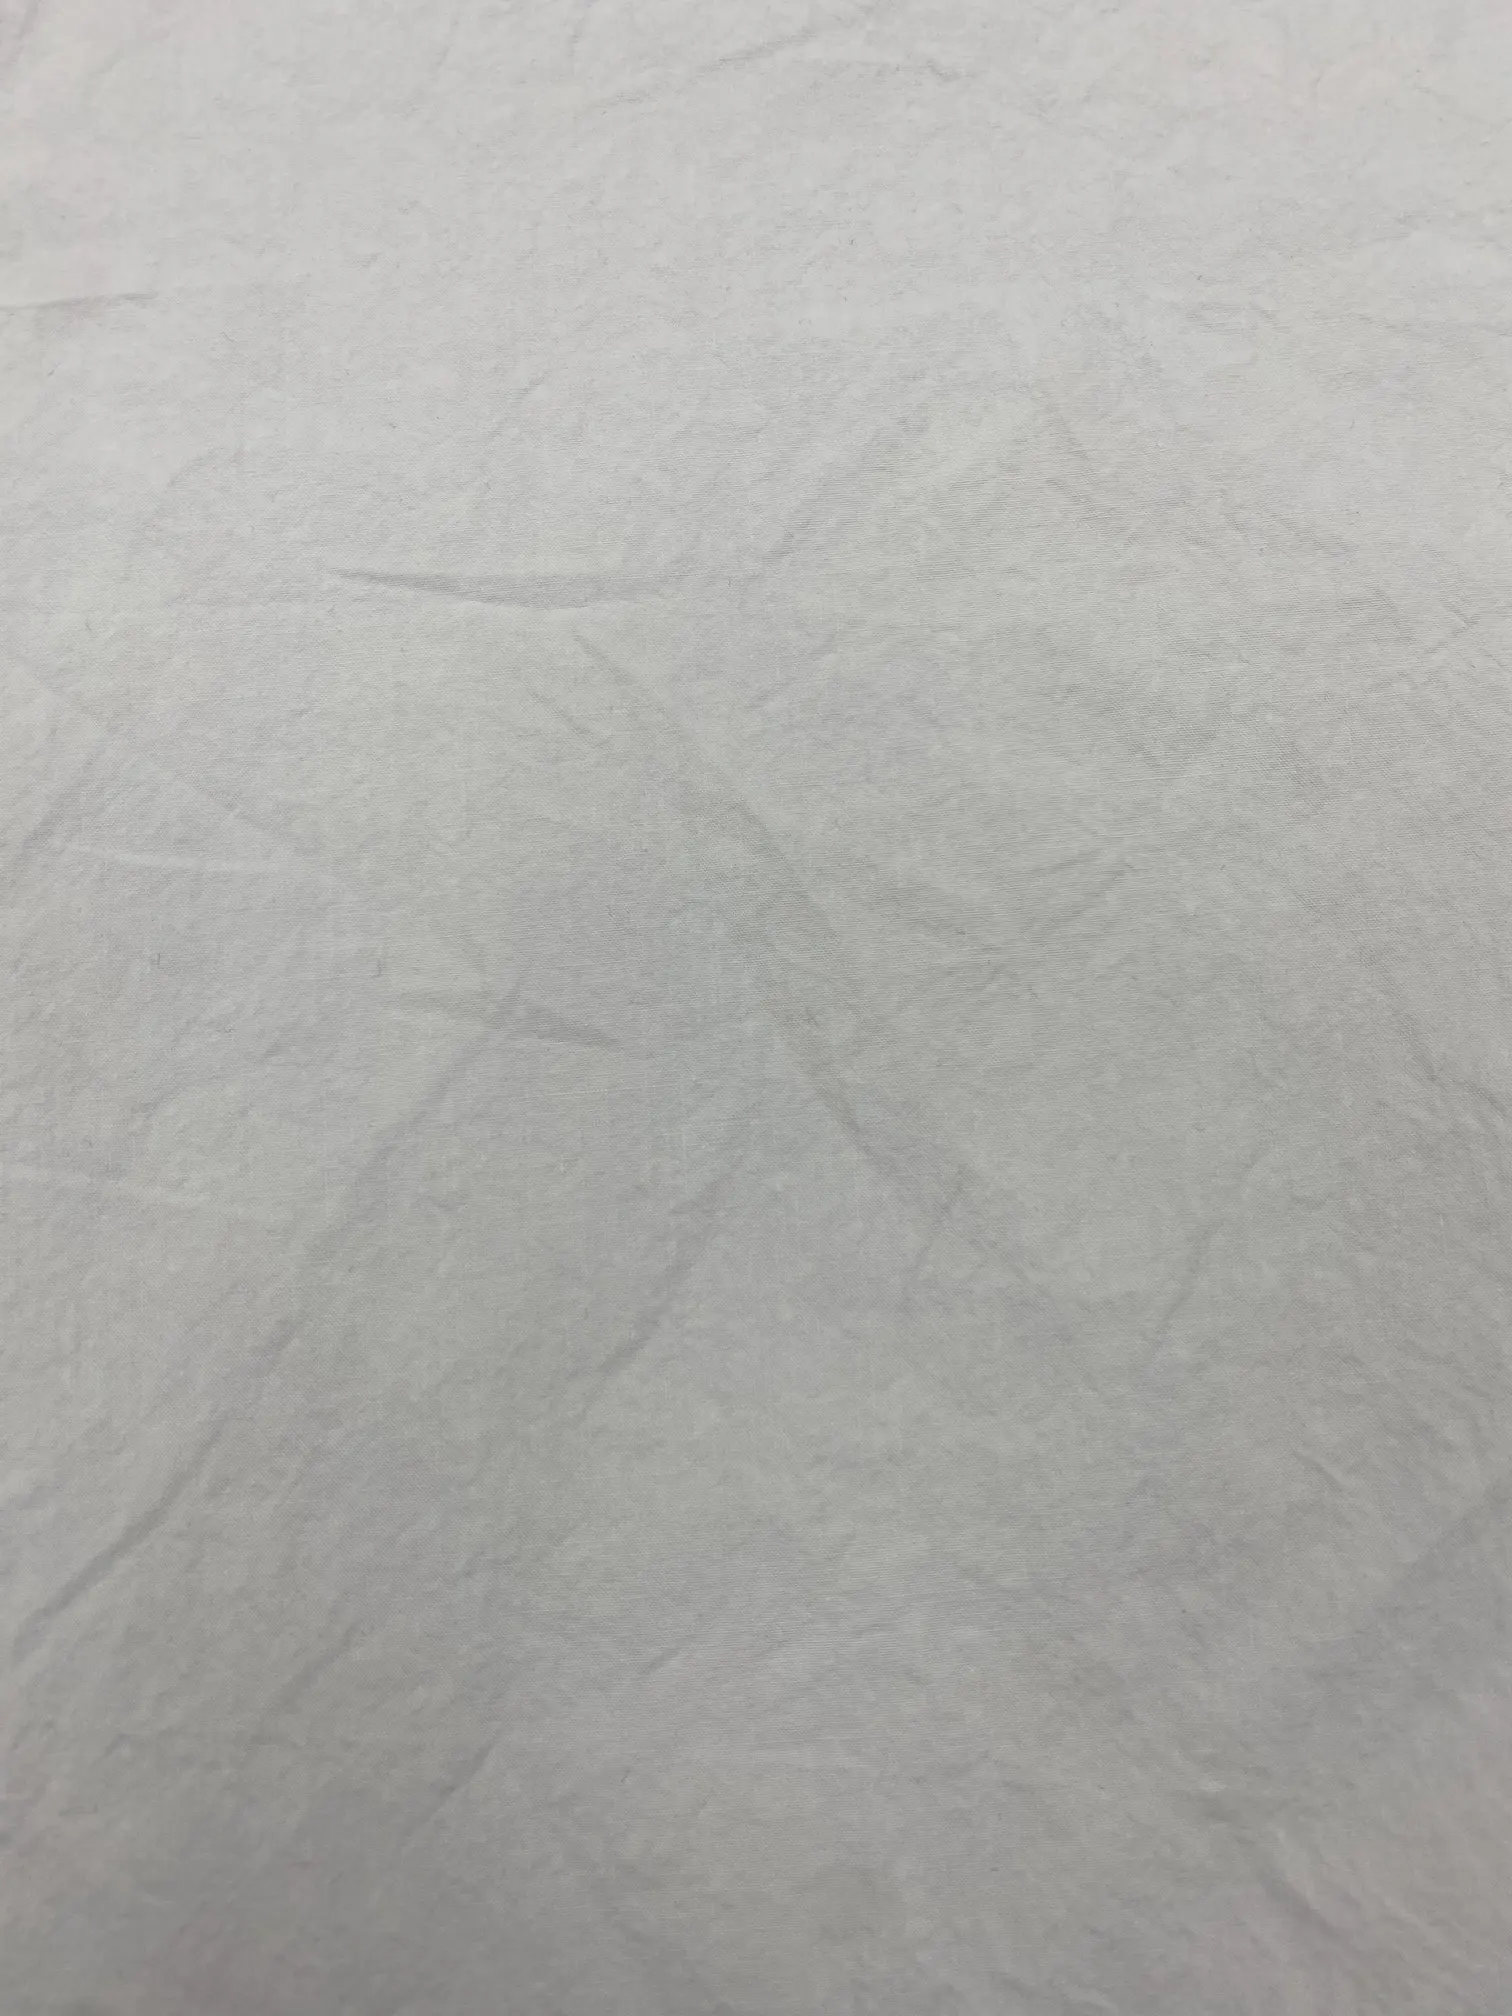 Üretim nefes özel renk beyaz 100% pamuk dokuma katı boyalı kumaş ceket